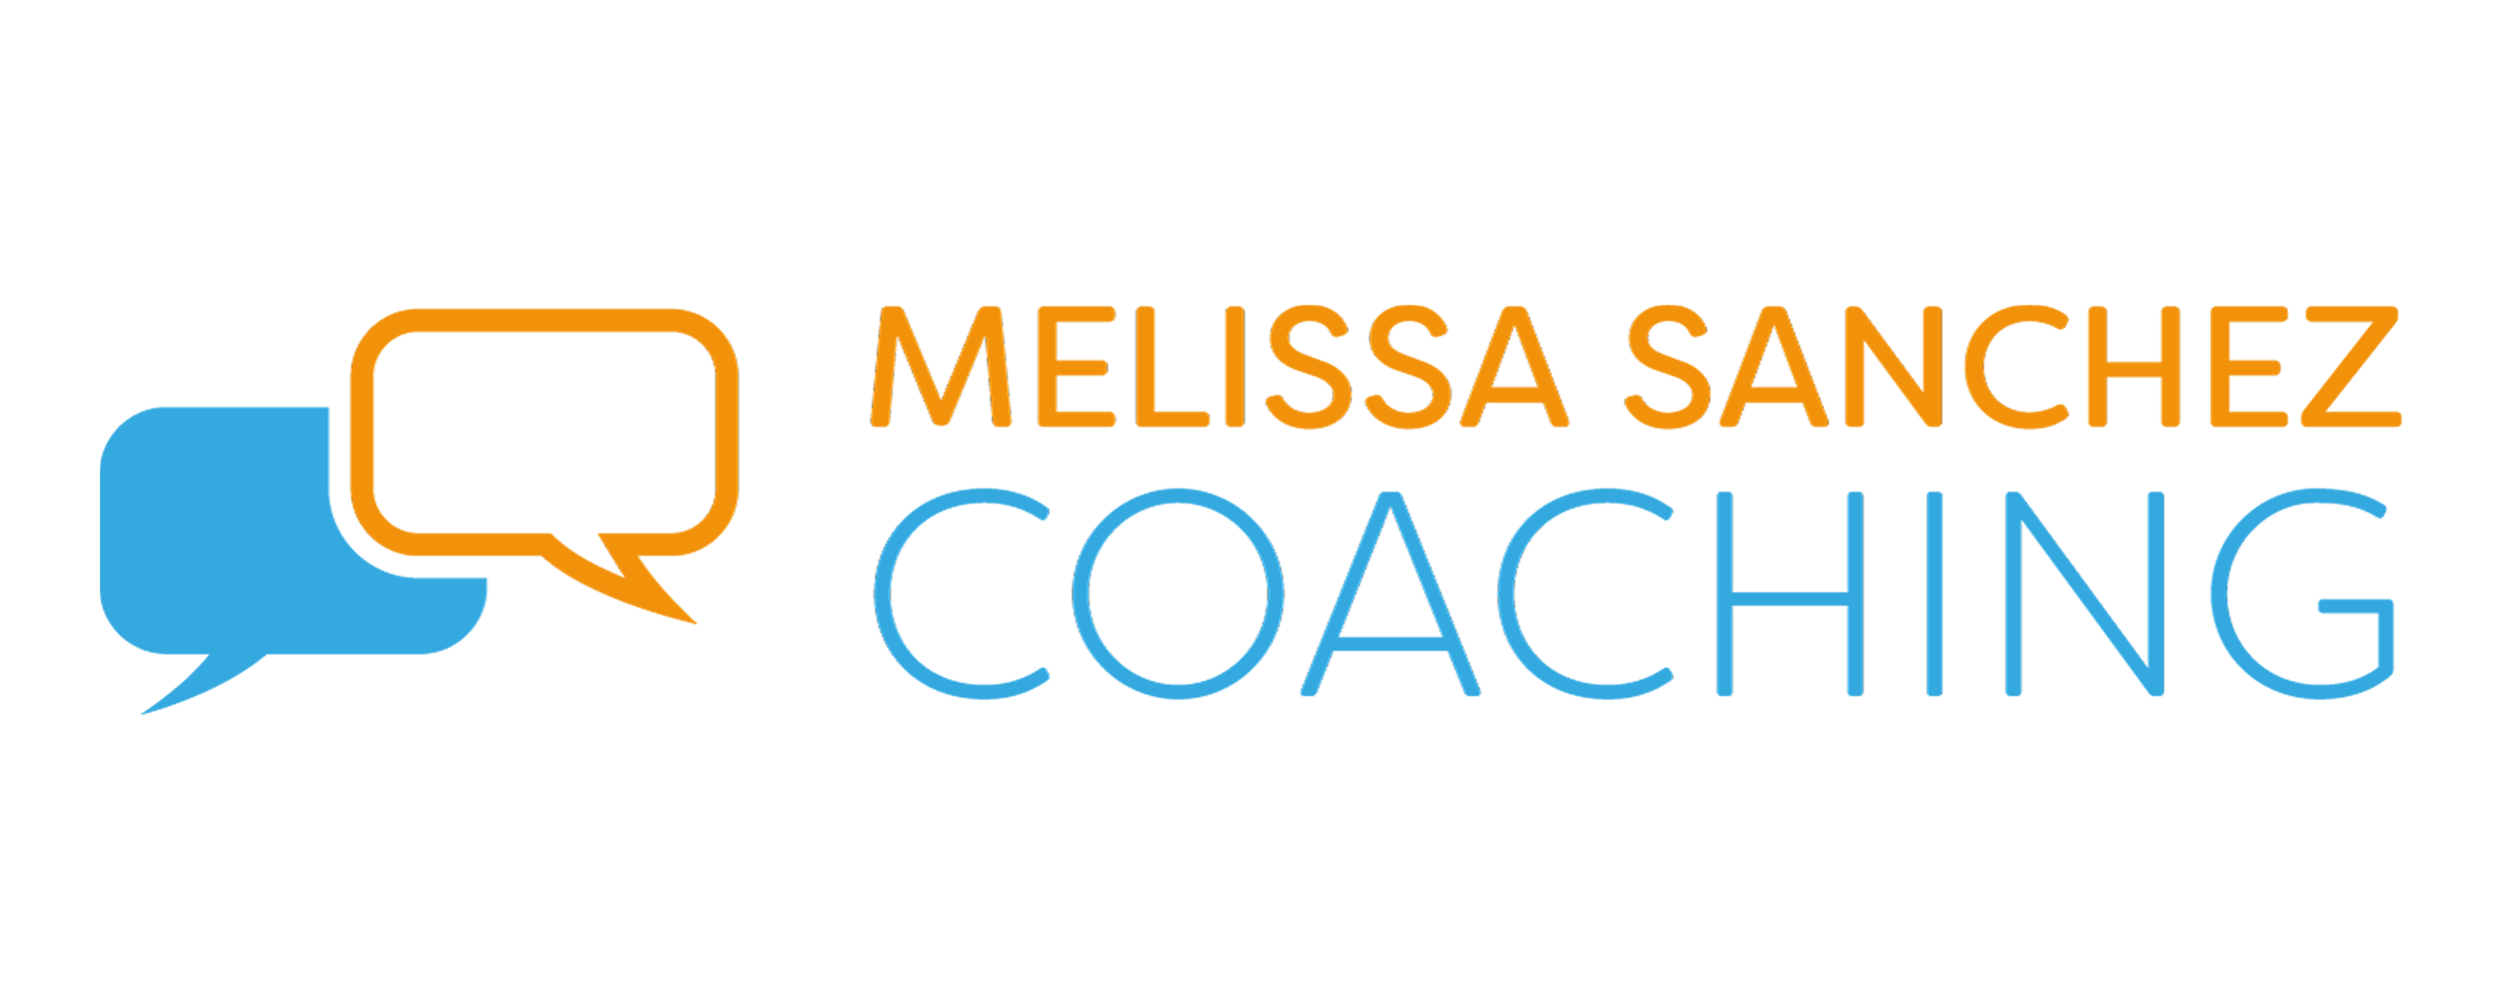 Melissa Sanchez Coaching